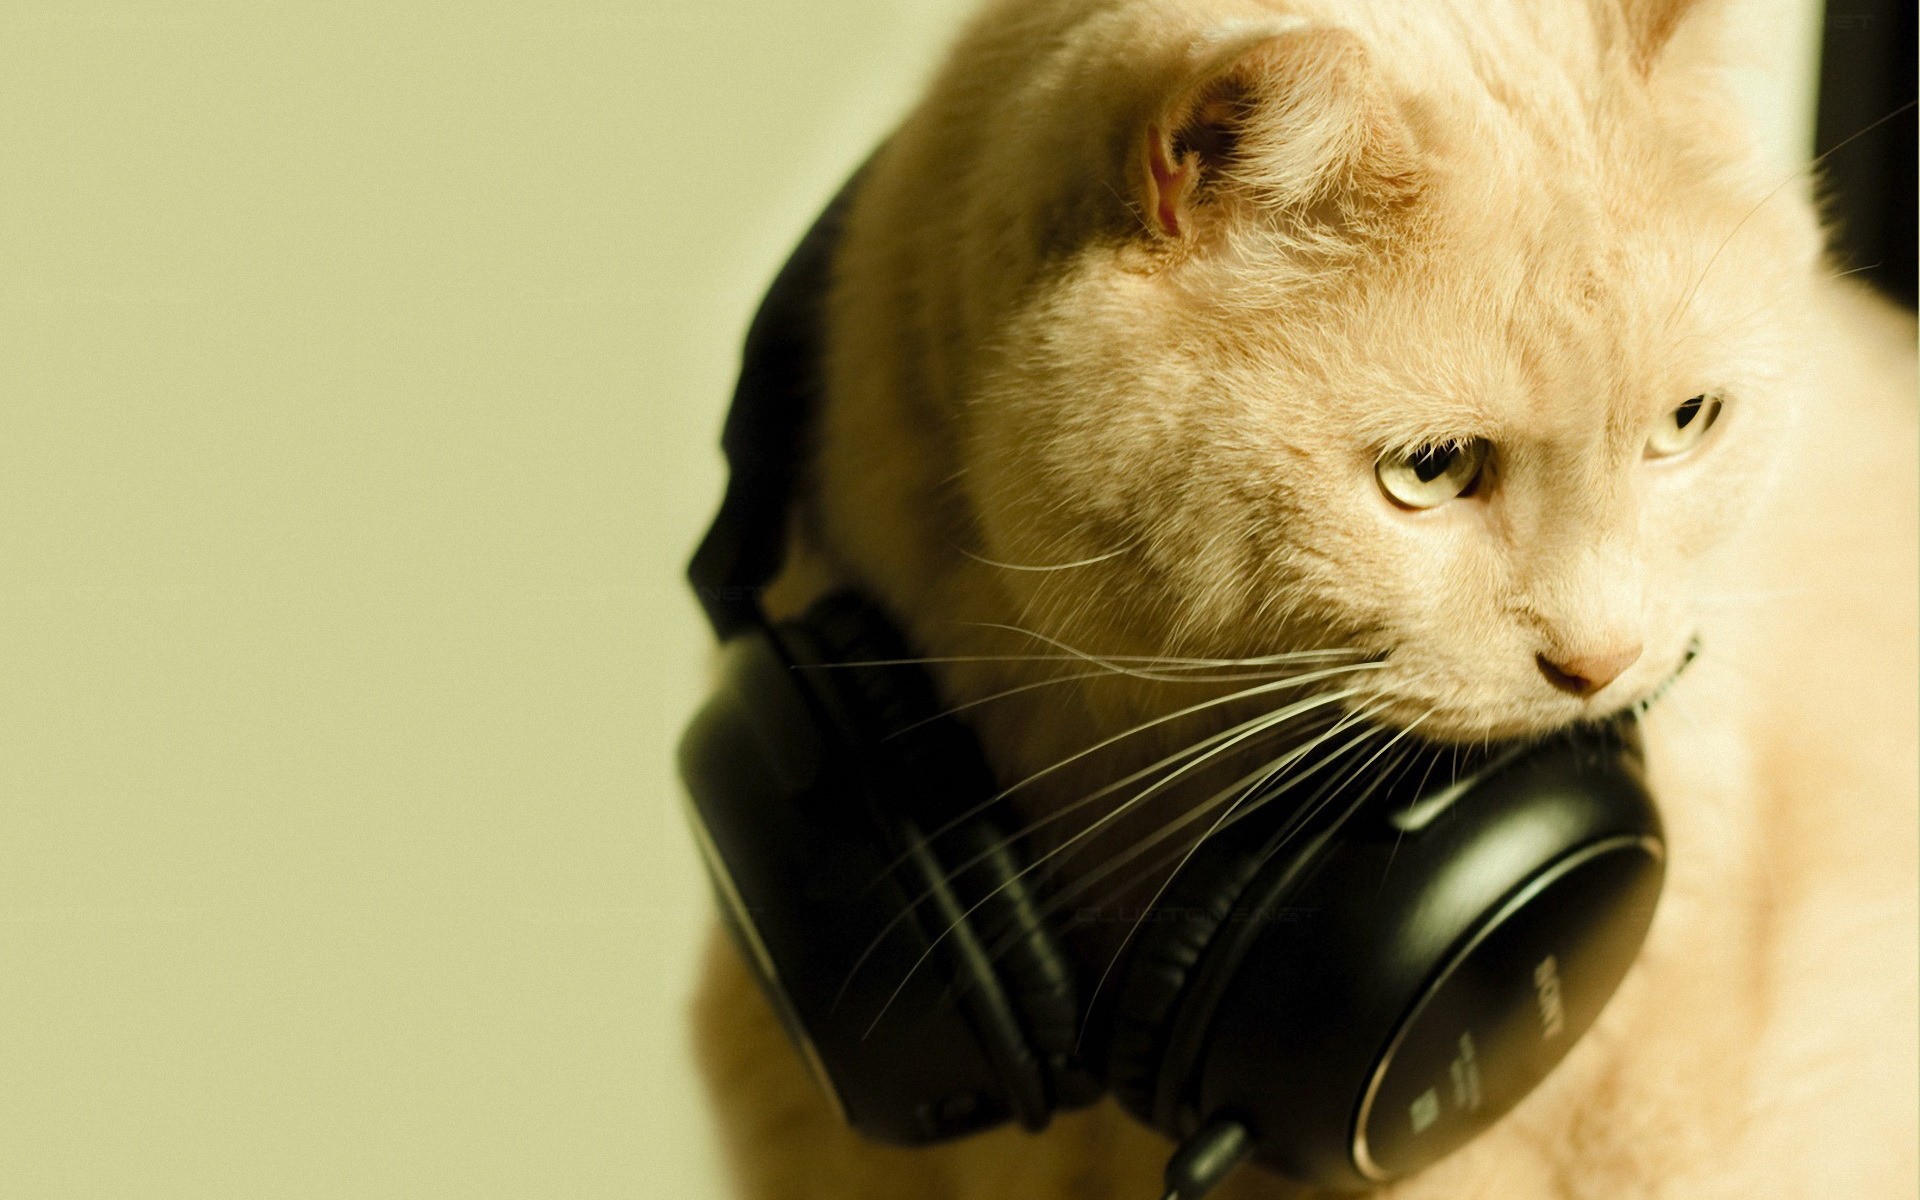 Descarga gratuita de fondo de pantalla para móvil de Gato, Auriculares, Gracioso, Humor, Gatos, Animales.